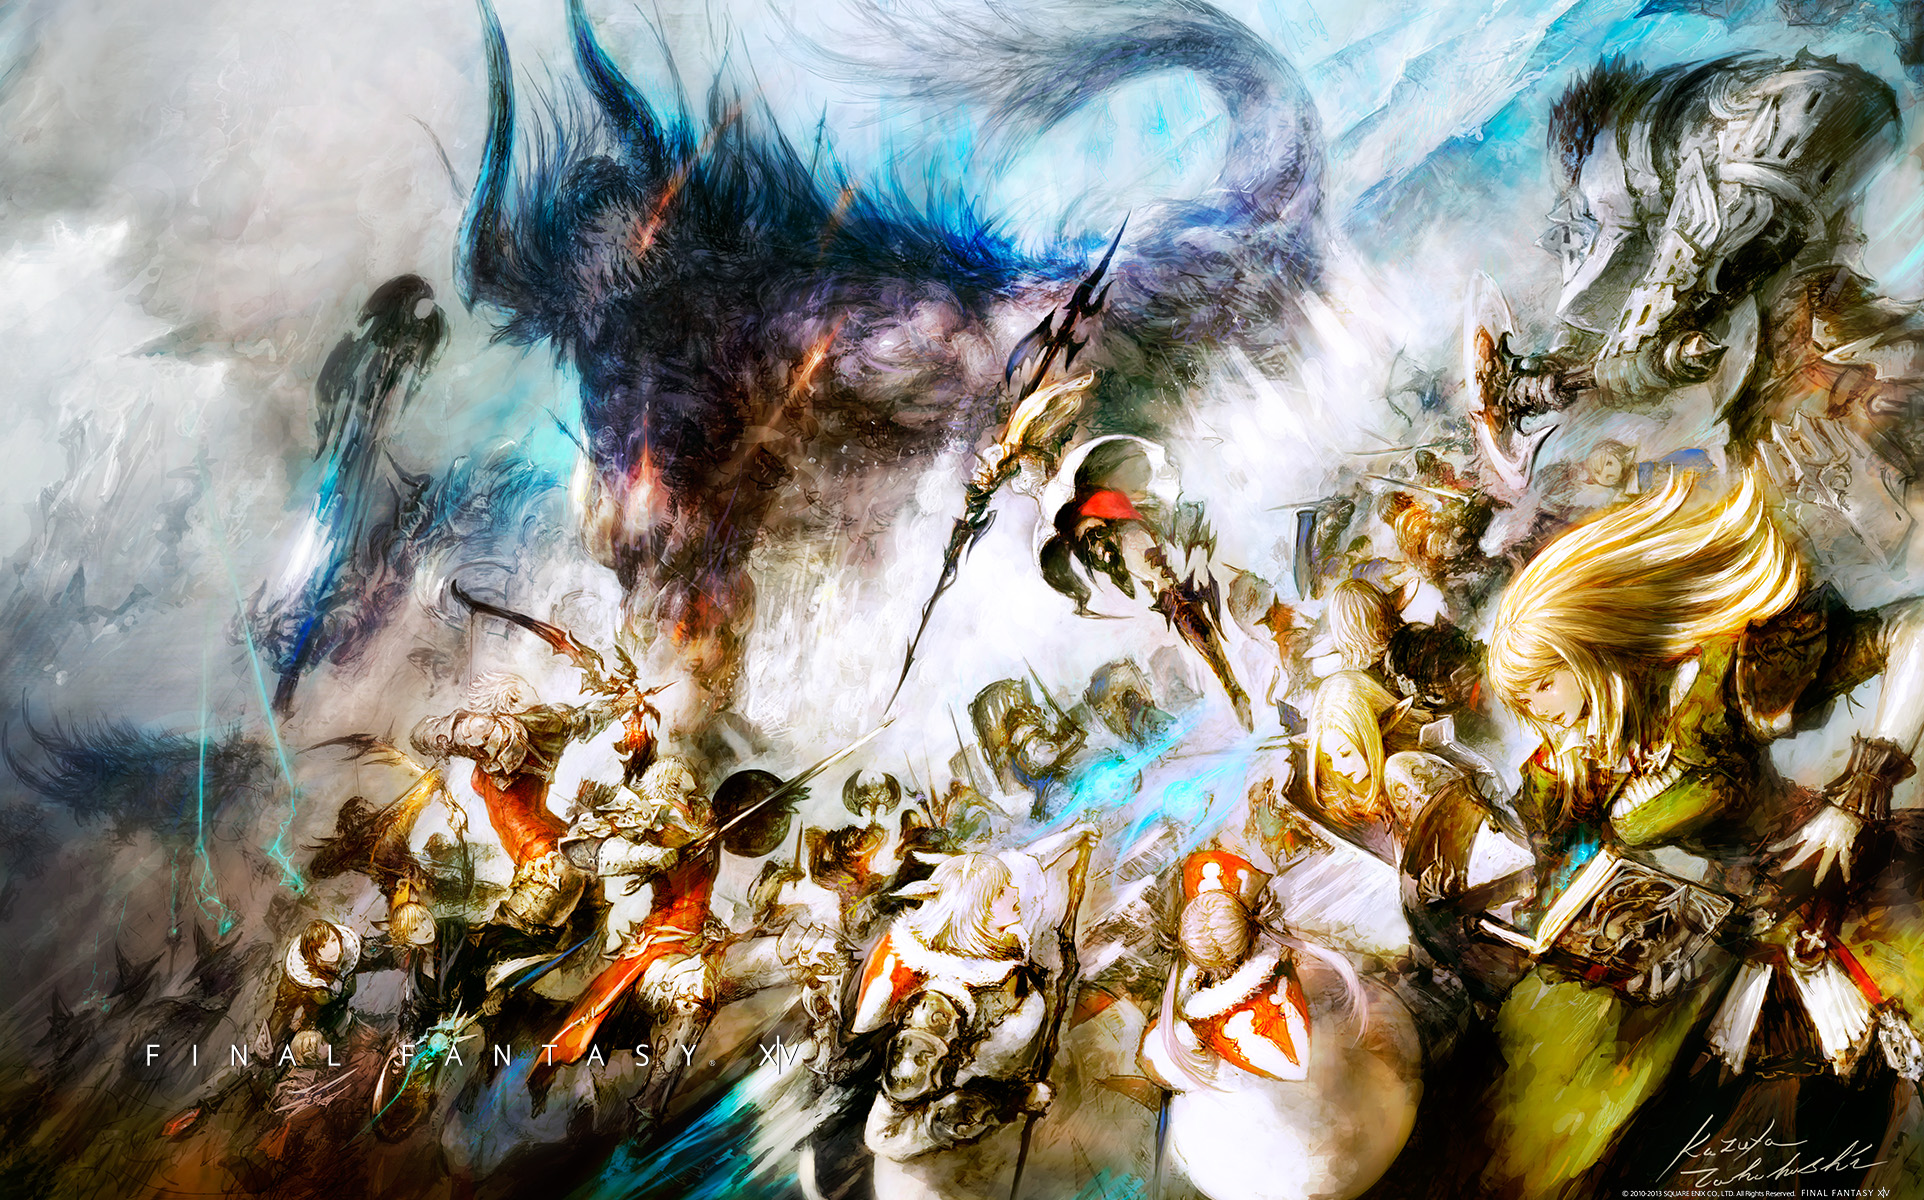 Популярные заставки и фоны Final Fantasy Xiv: Царство Возрождается на компьютер